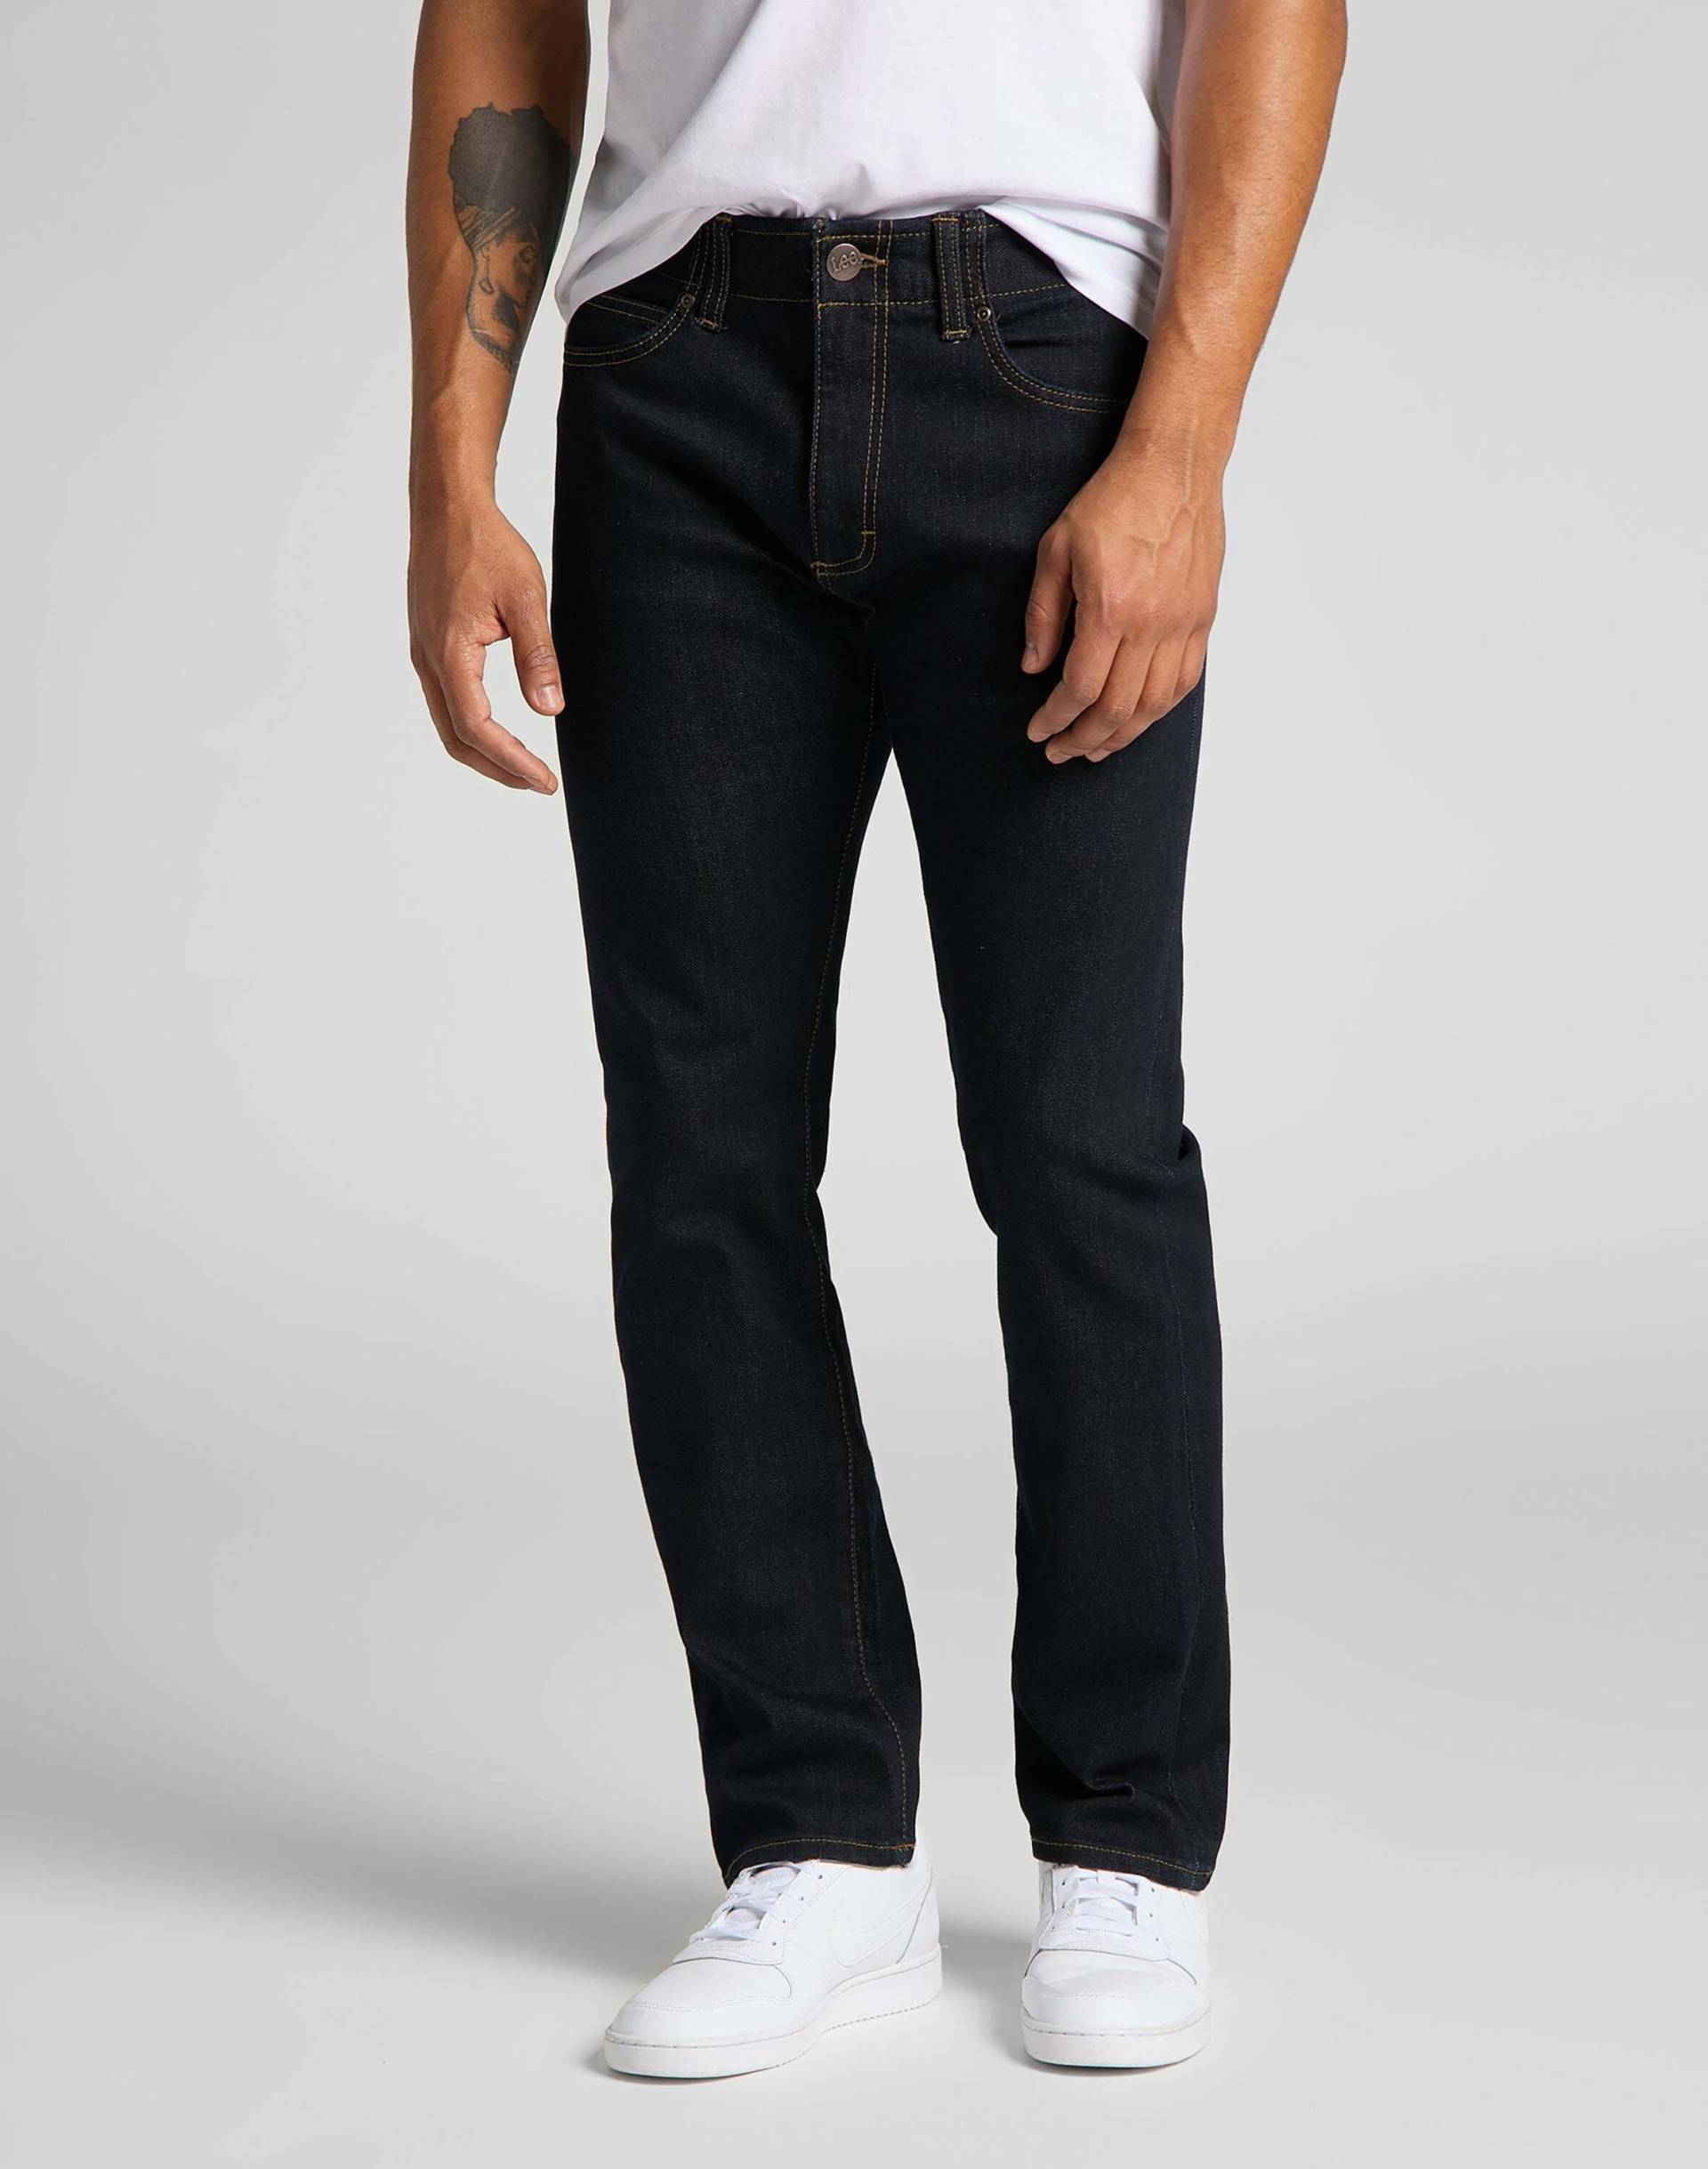 Jeans Slim Fit Mvp Herren Blau L34/W29 von Lee